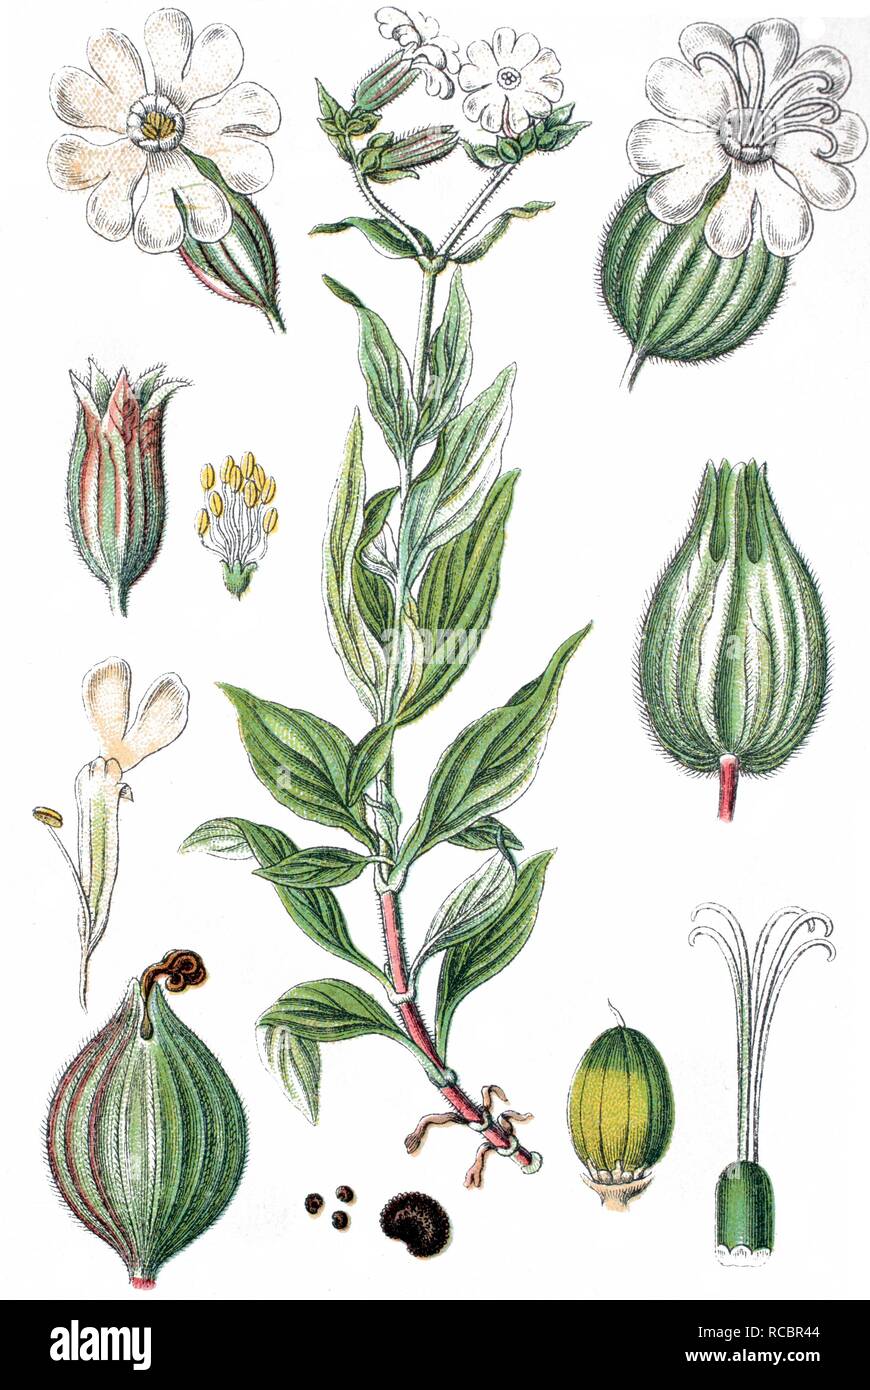 White (Silene latifolia subsp. alba Mill.), plante médicinale, plante cultivée, lithography, vers 1870 Banque D'Images